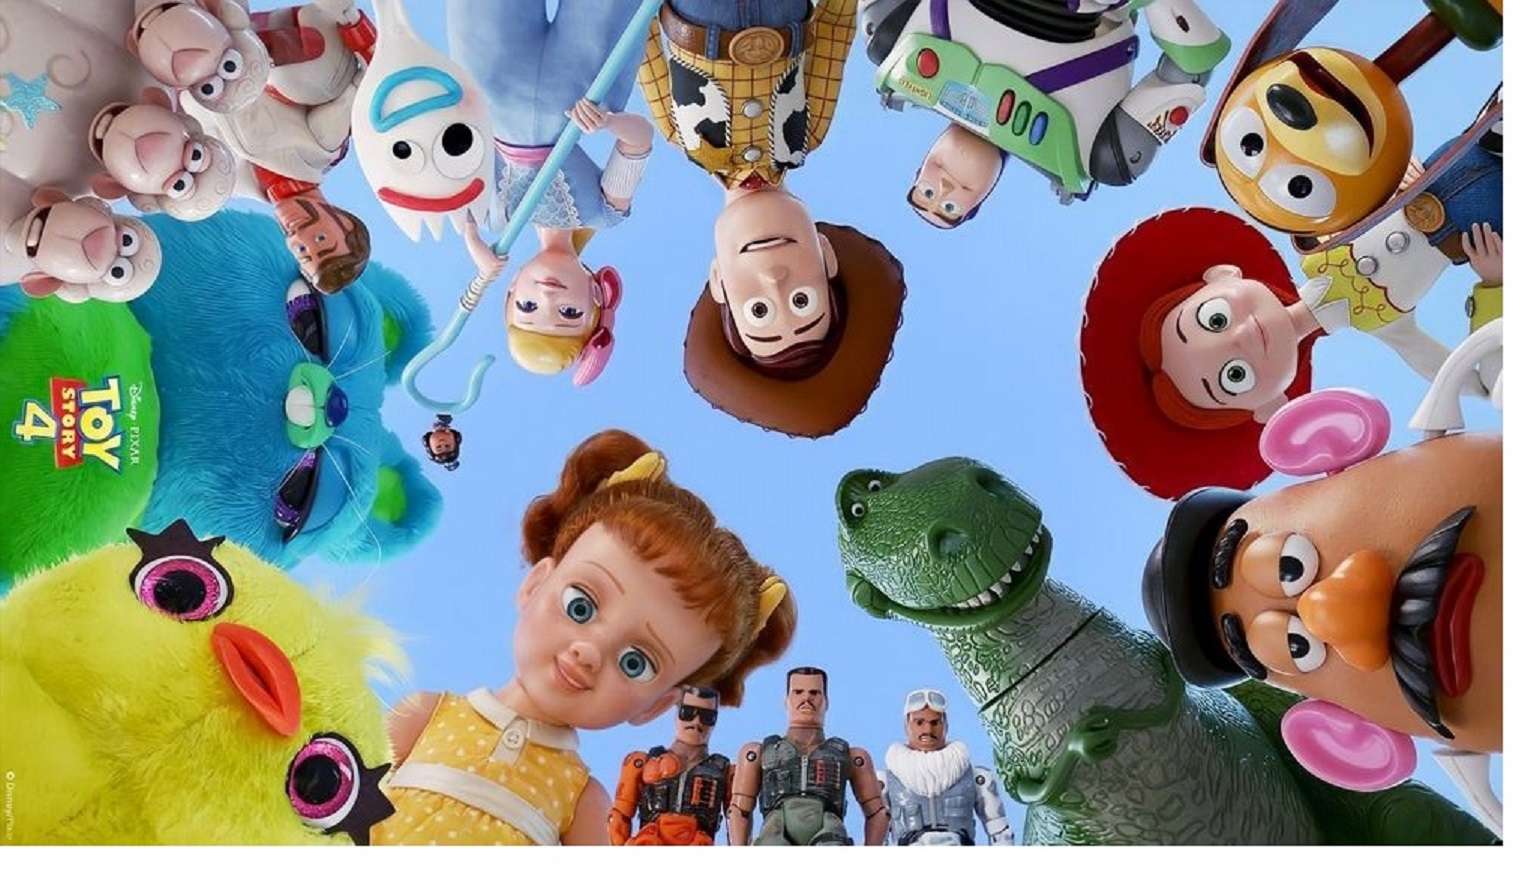 Toy Story quebra-cabeças online